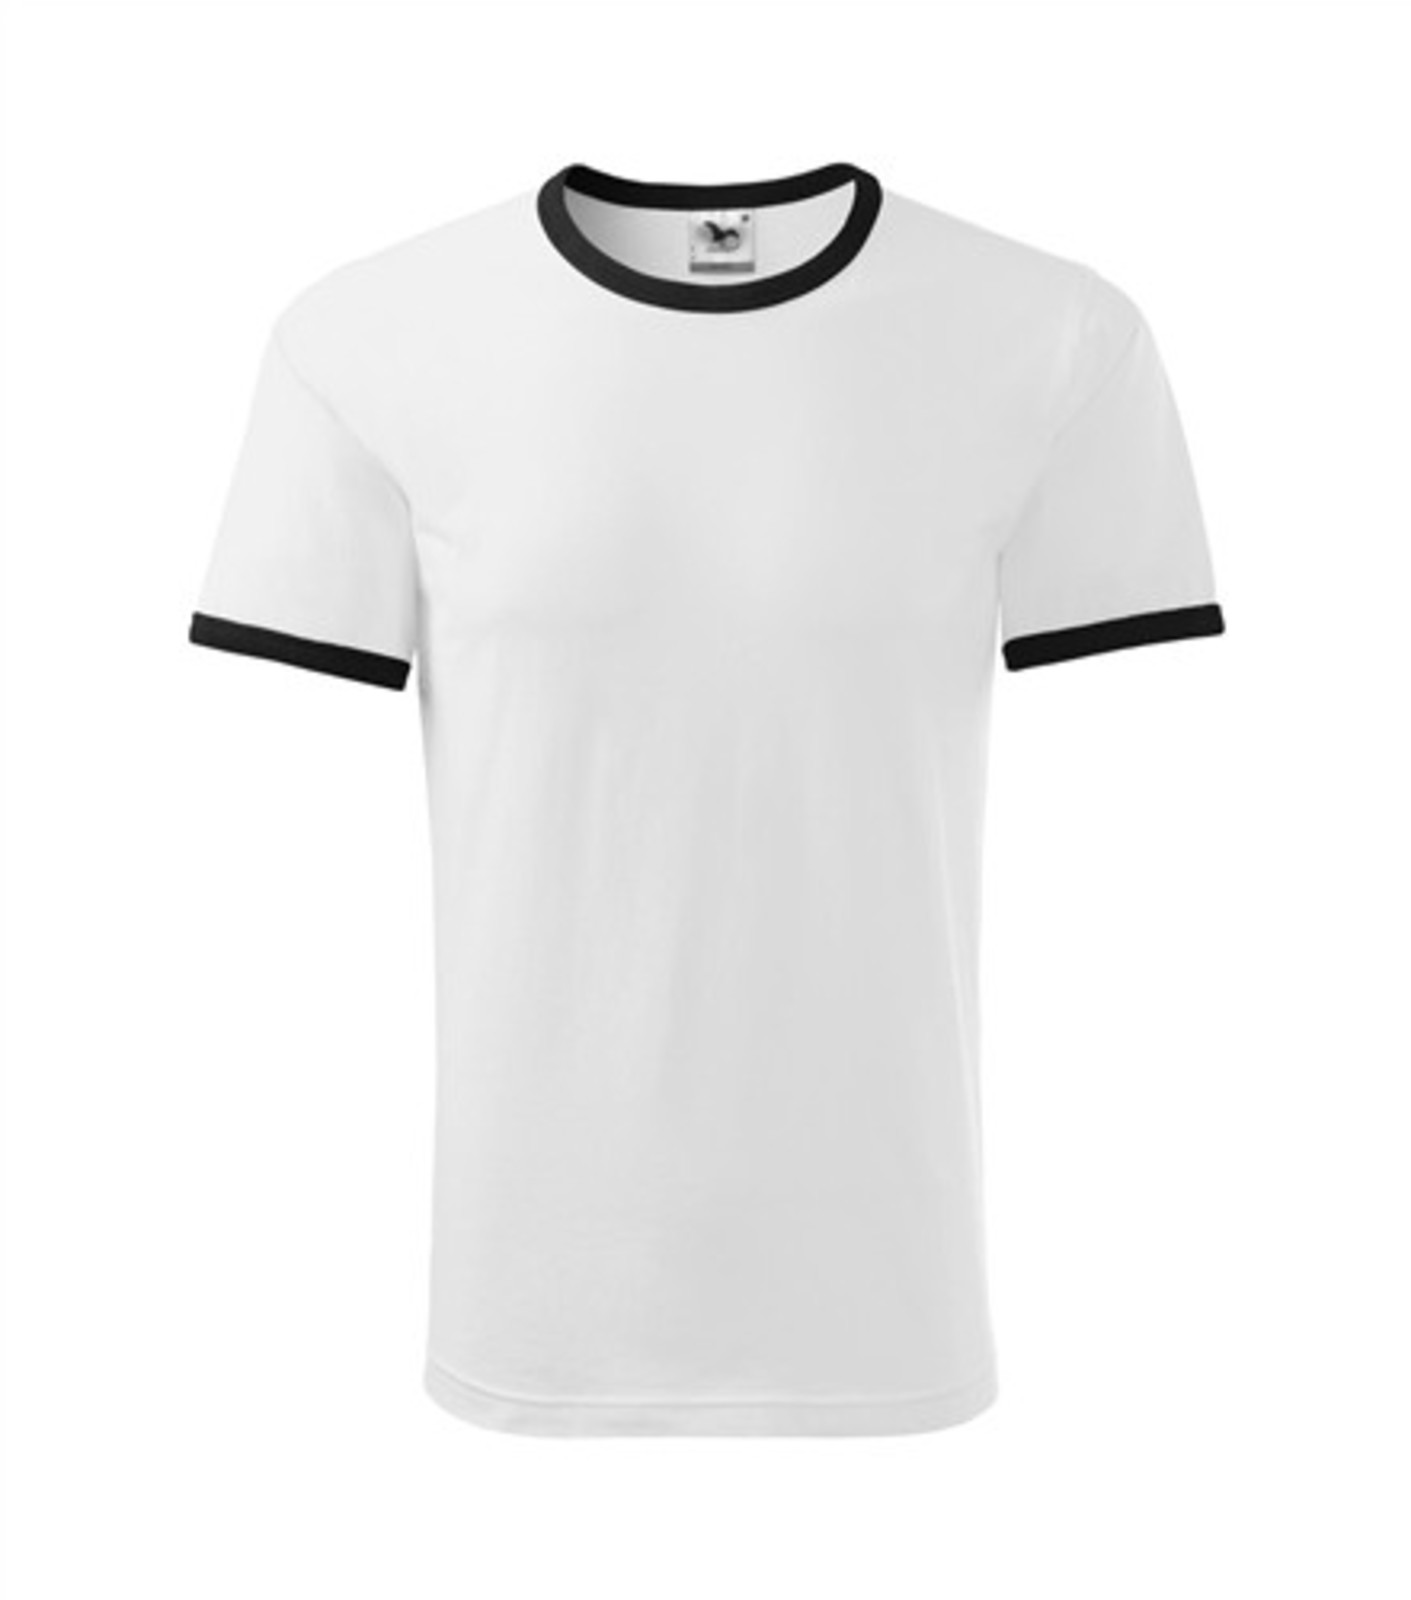 Unisex tričko Adler Infinity 131 - veľkosť: M, farba: biela/čierna